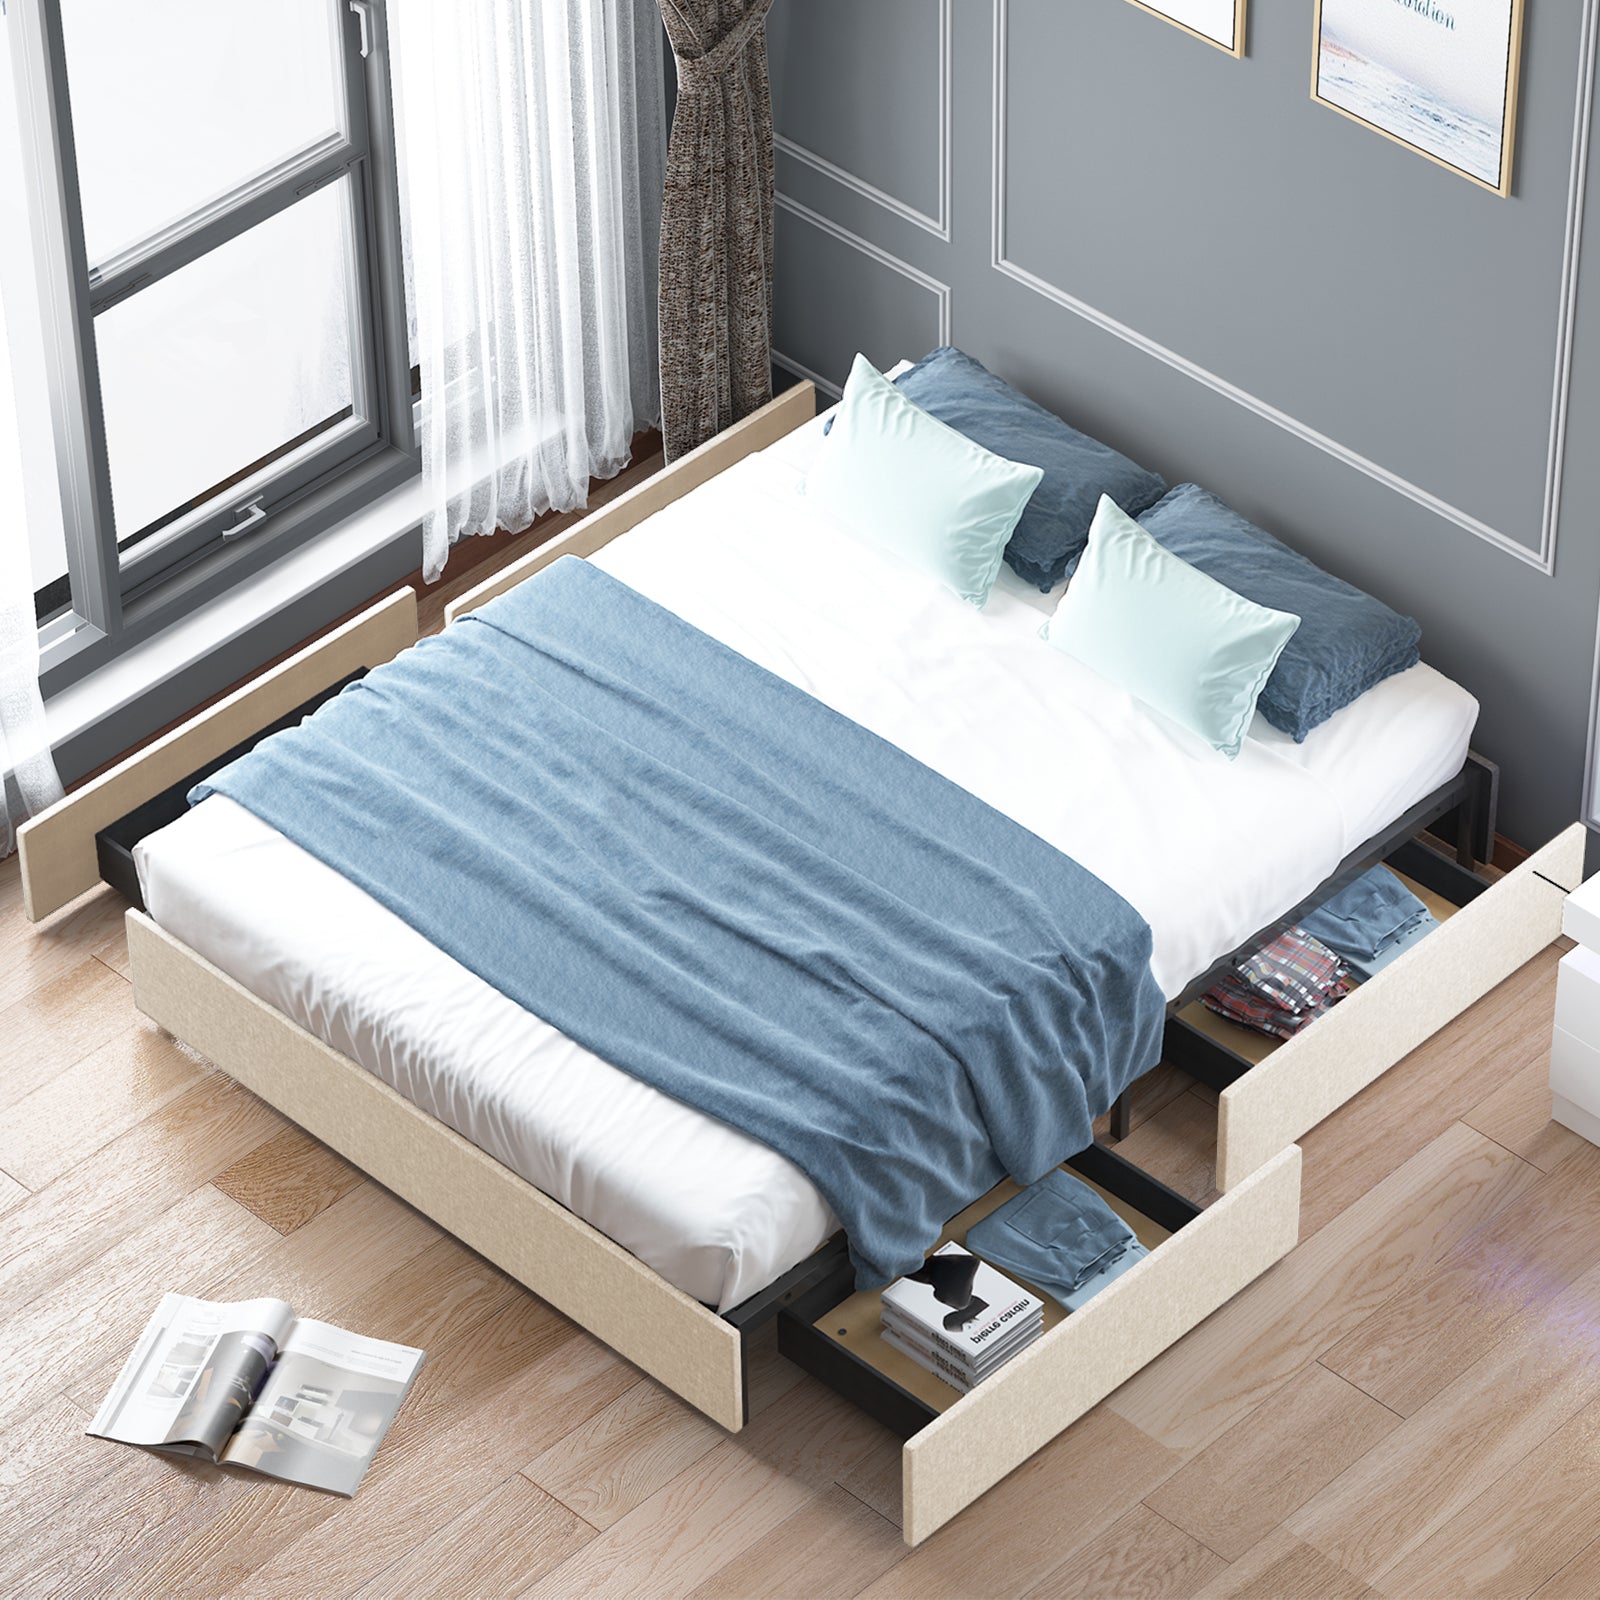 Mjkone Wooden Platform Bed Frame With 4 Drawers